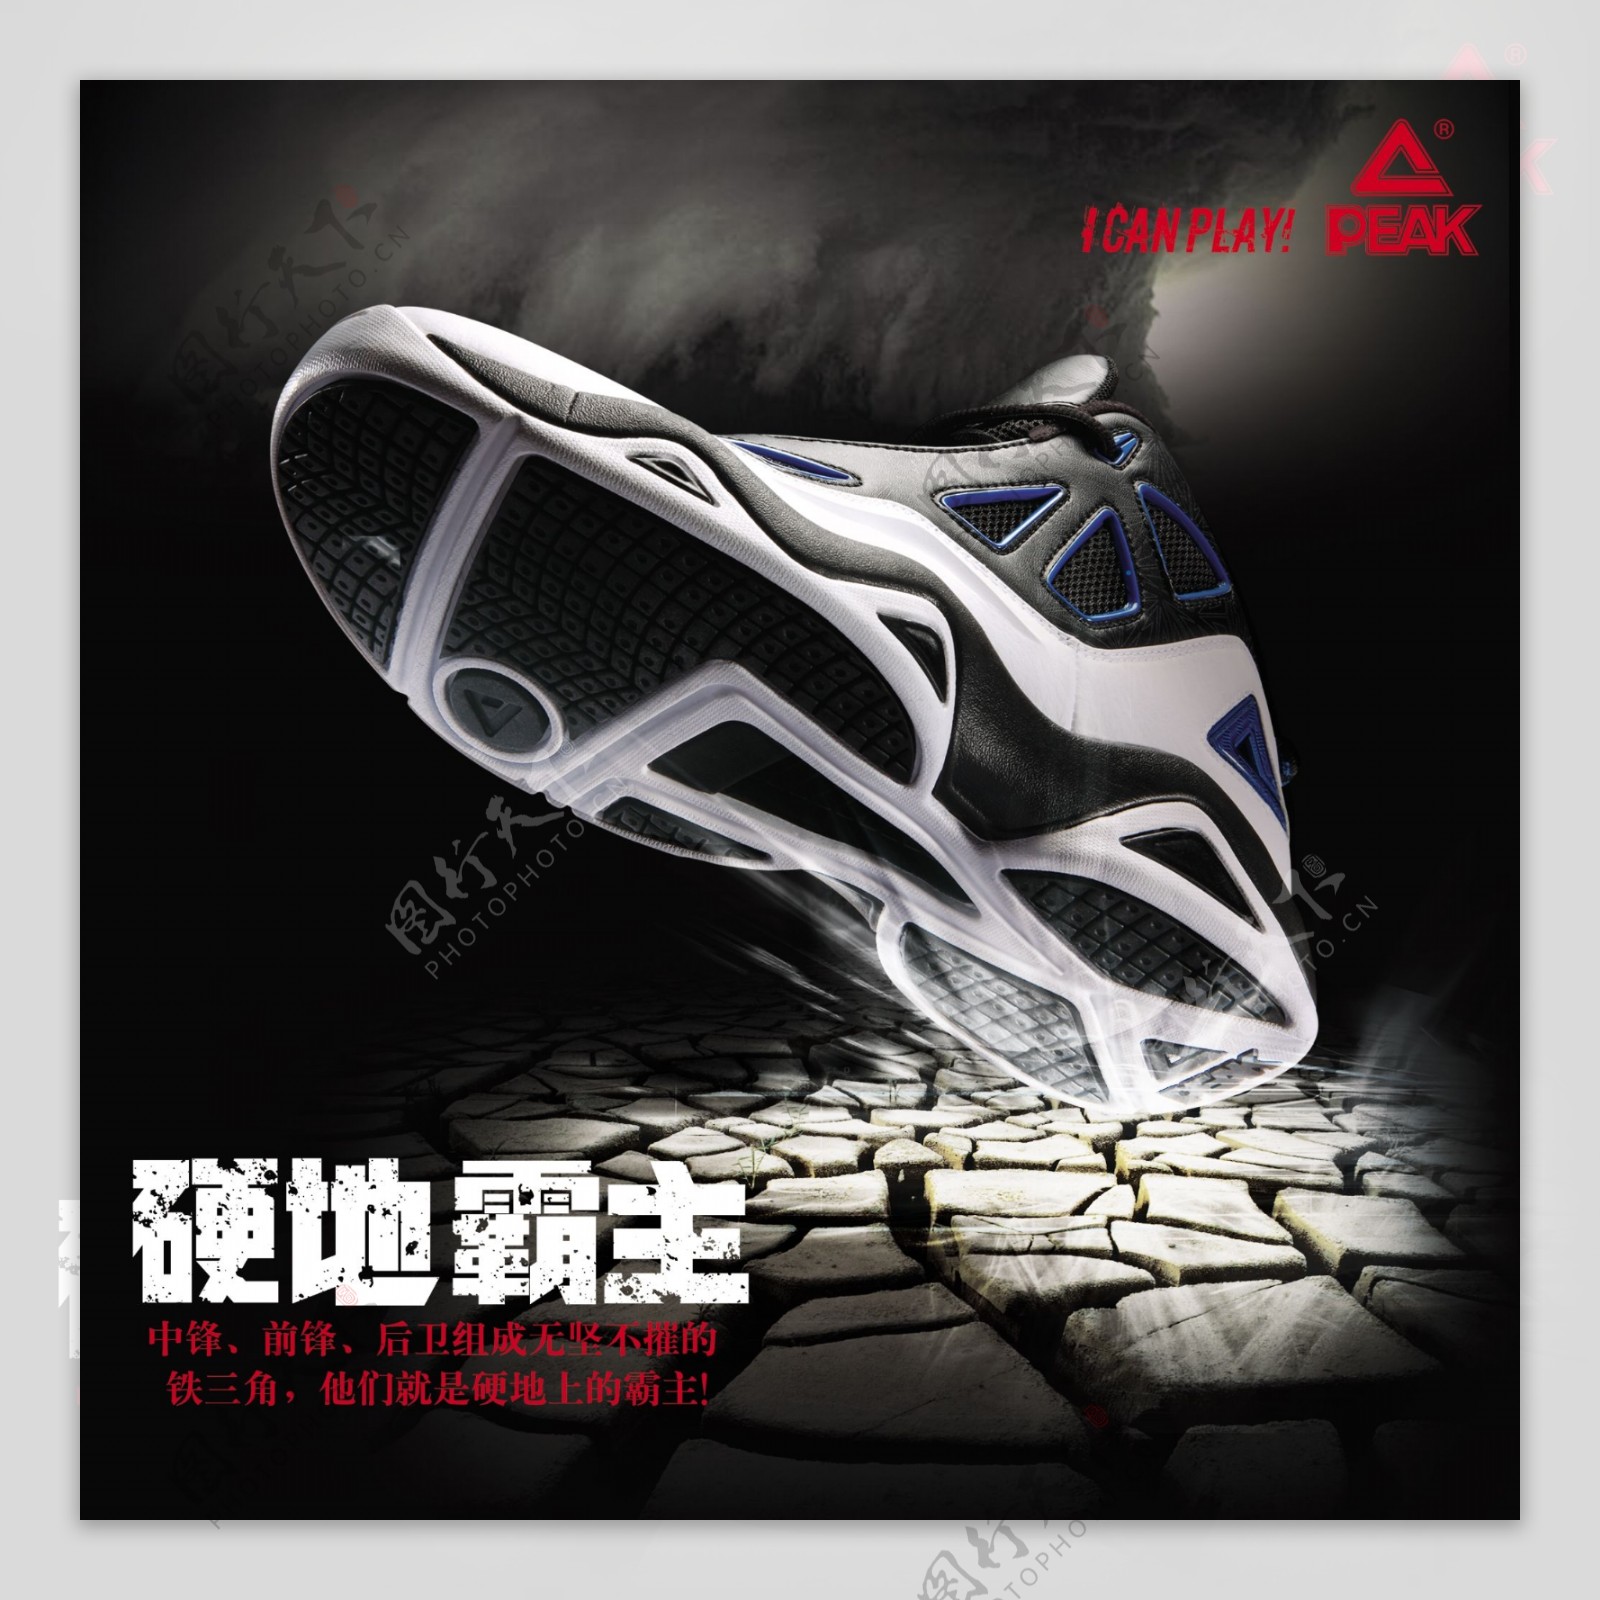 超火的匹克「大三角」又来了！这次是经典的奥利奥配色！ 球鞋资讯 FLIGHTCLUB中文站|SNEAKER球鞋资讯第一站